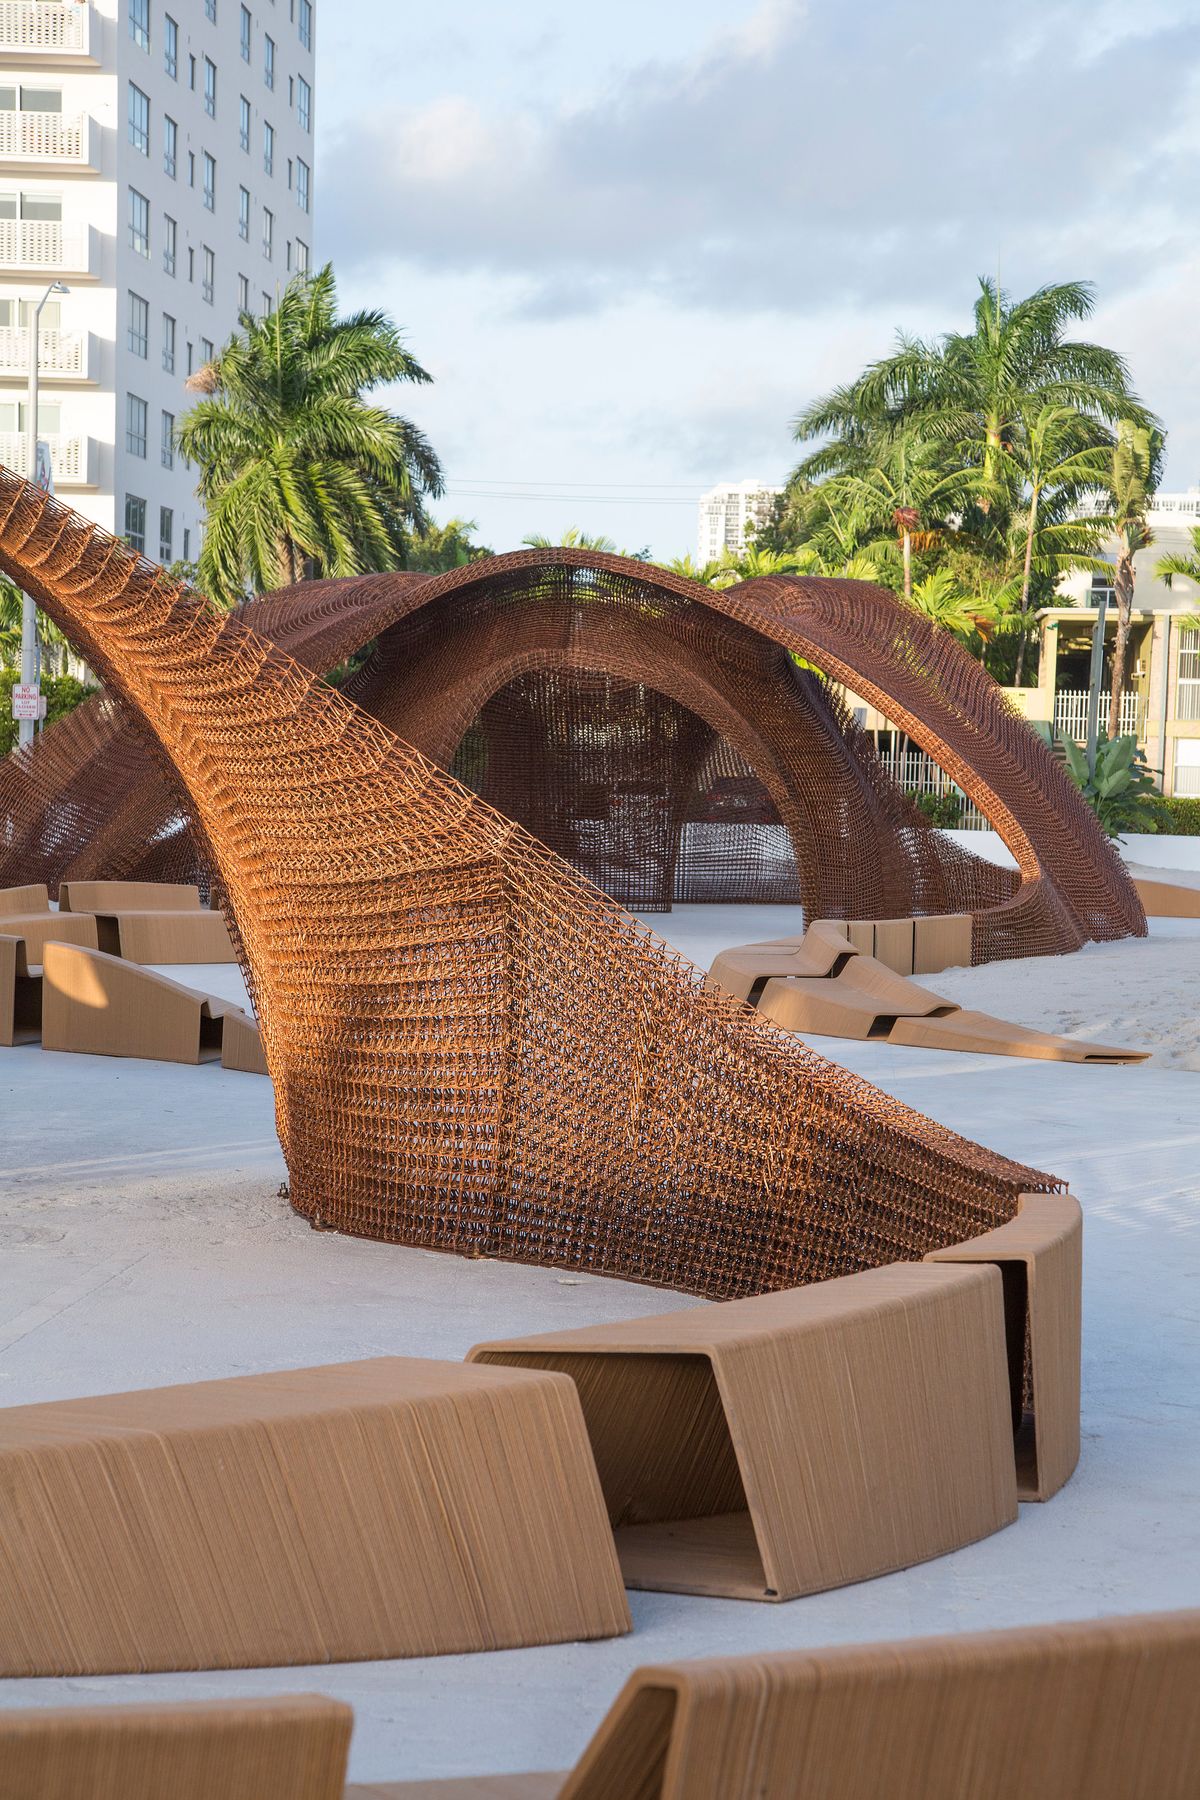 Design Miami Pavilions